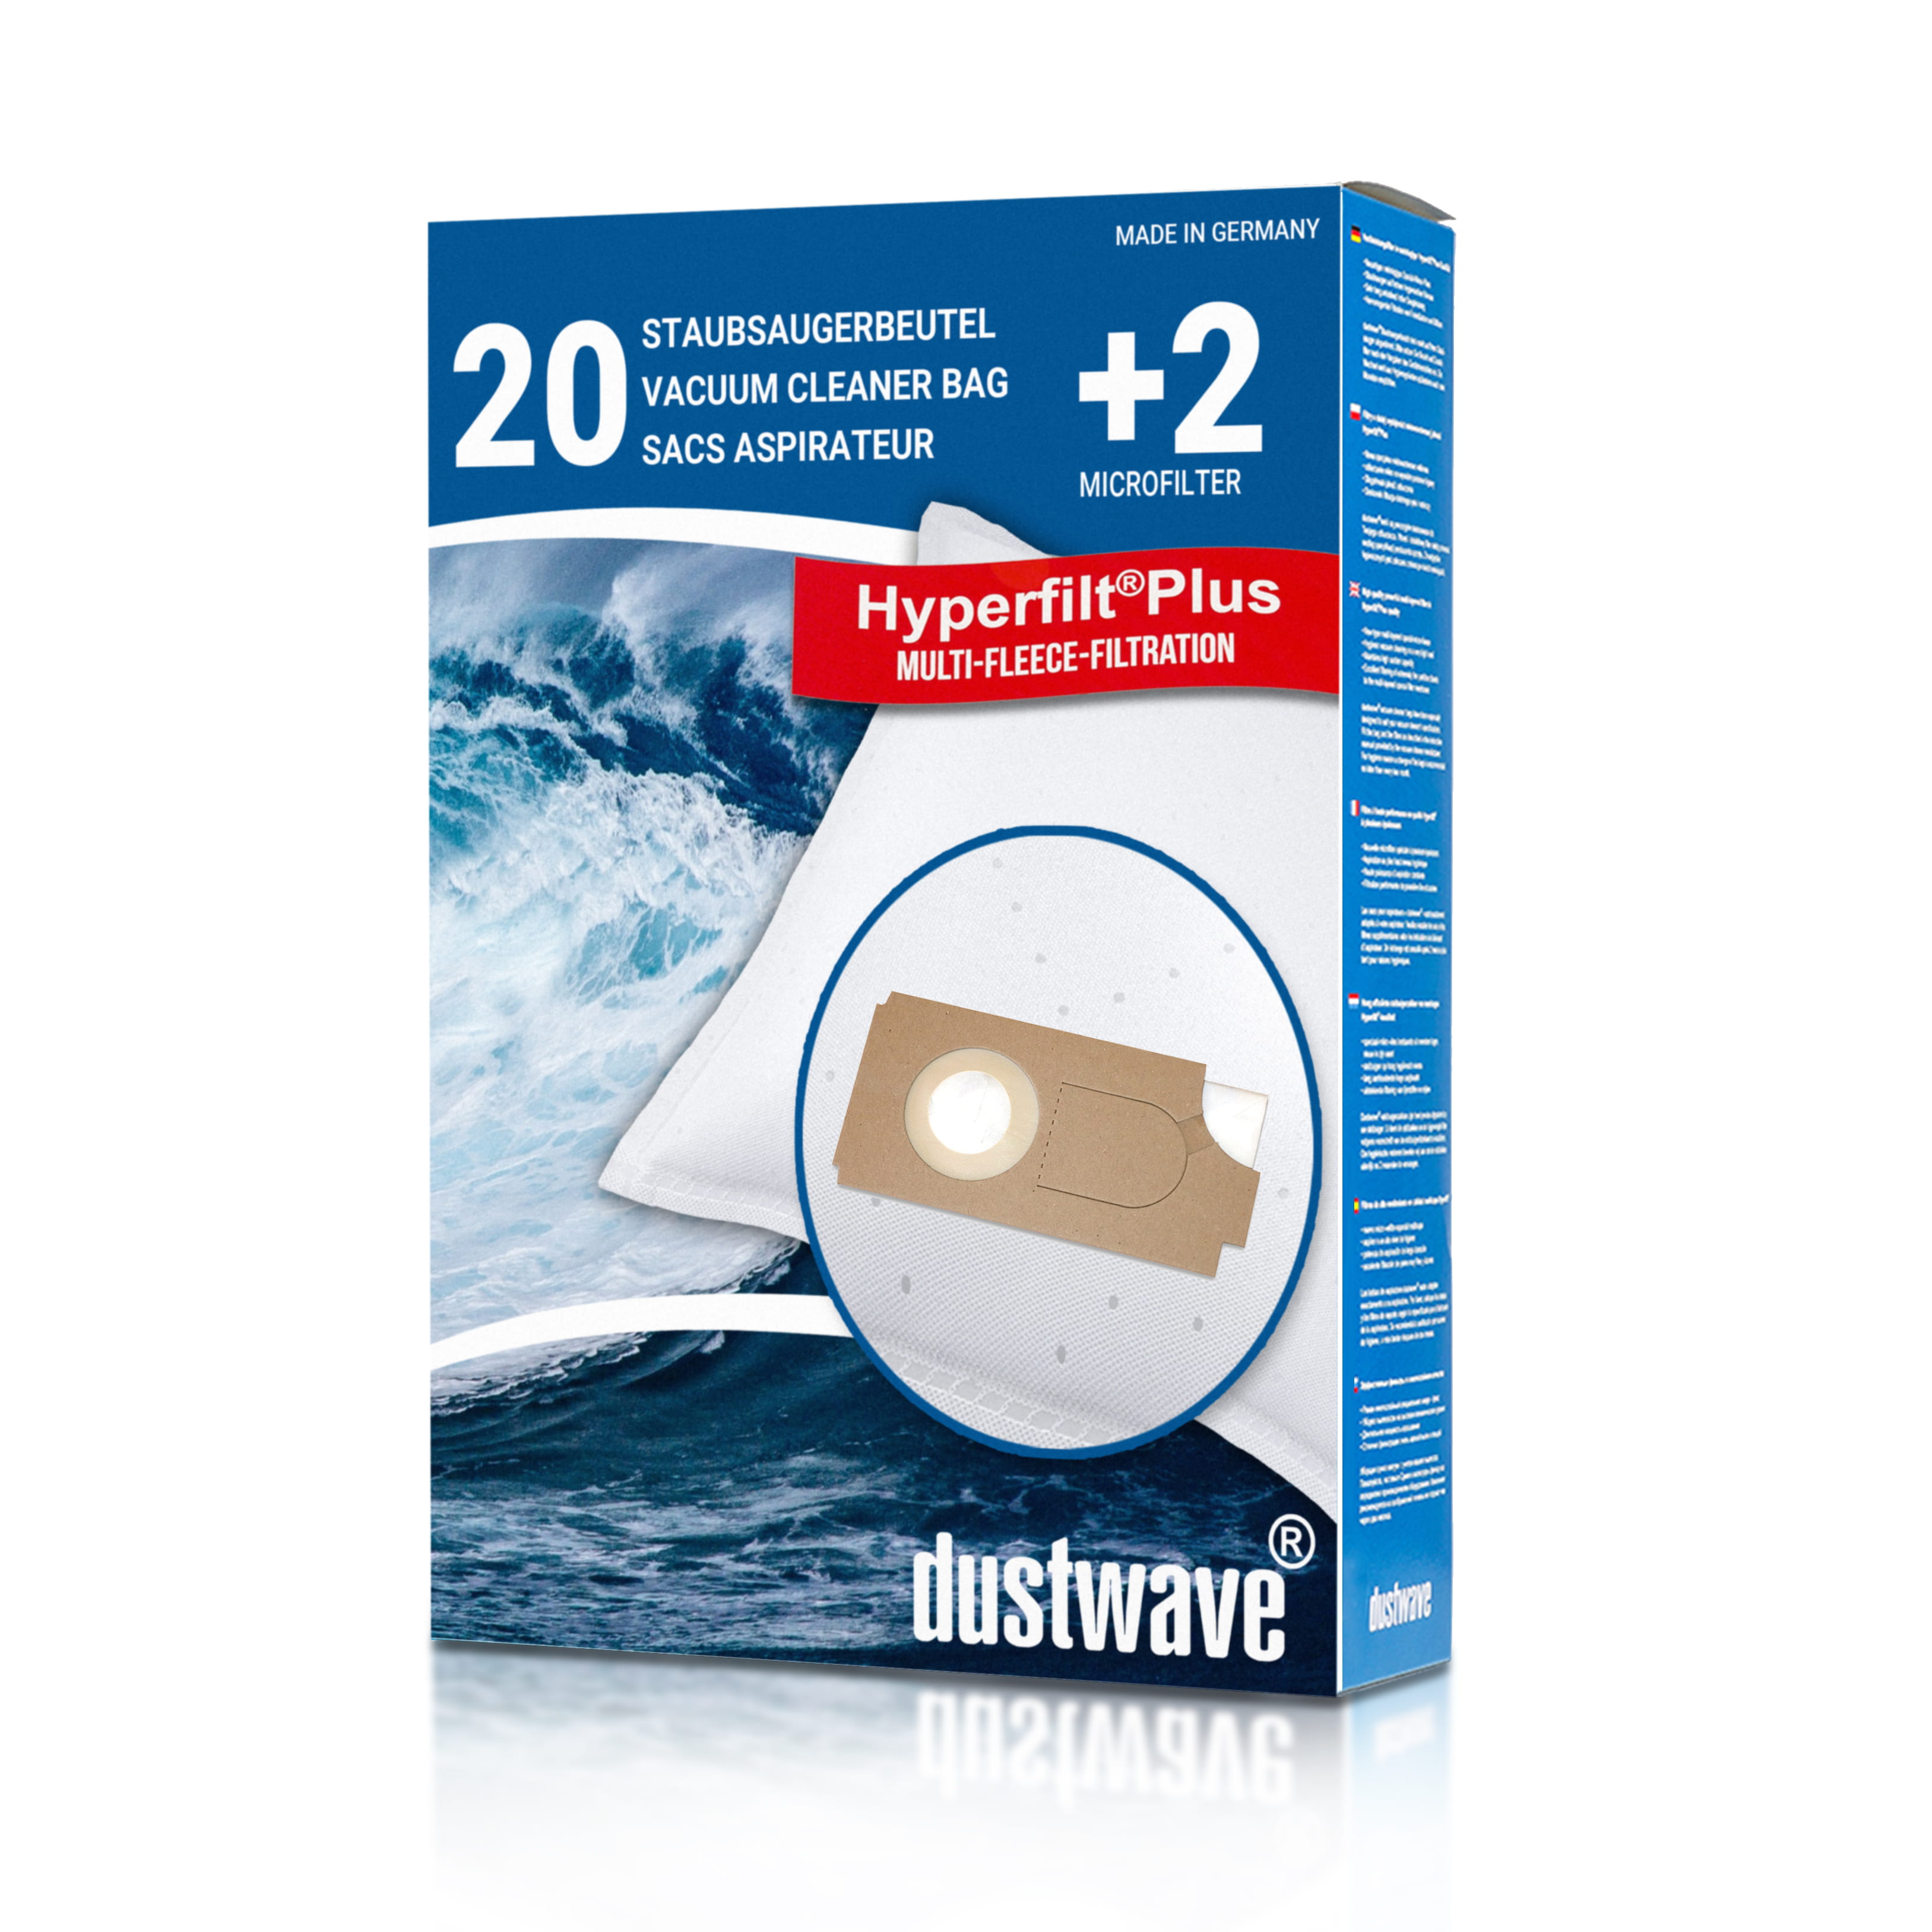 Dustwave® 20 Staubsaugerbeutel für Columbus BS 360 » 460 - hocheffizient mit Hygieneverschluss - Made in Germany